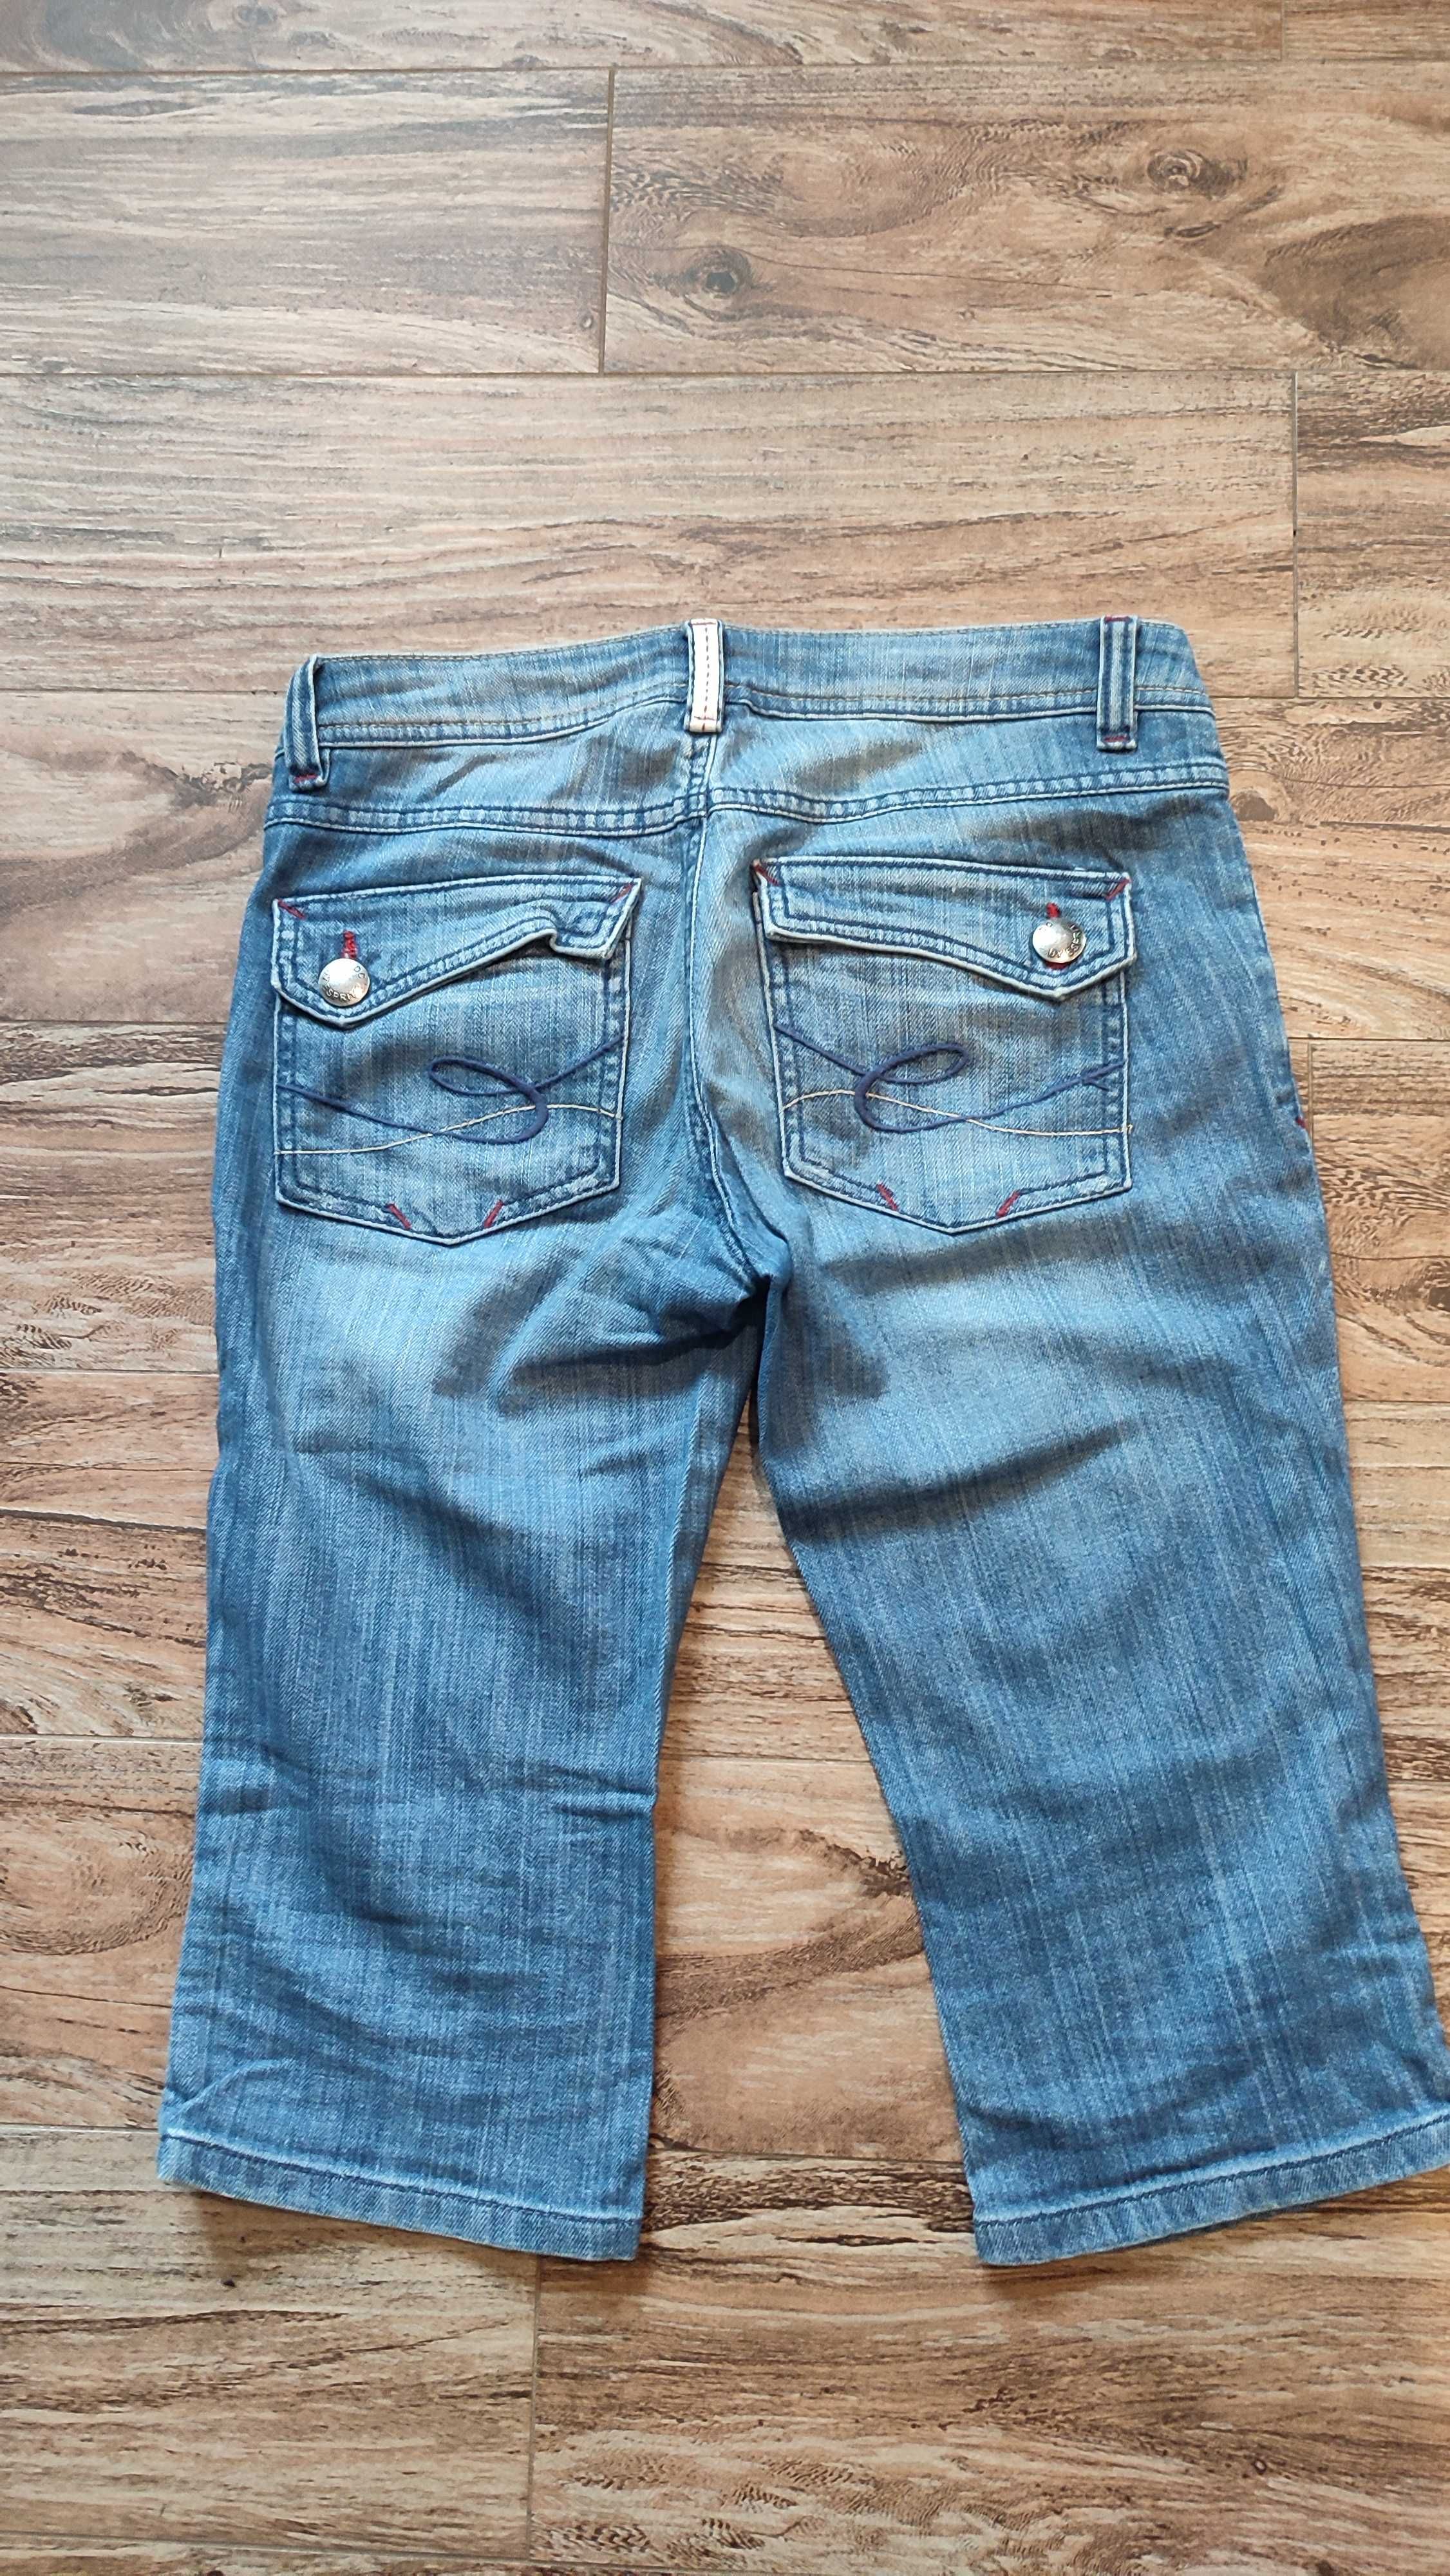 Spodnie krótkie jeansy Five EDC by Espirit roz.36